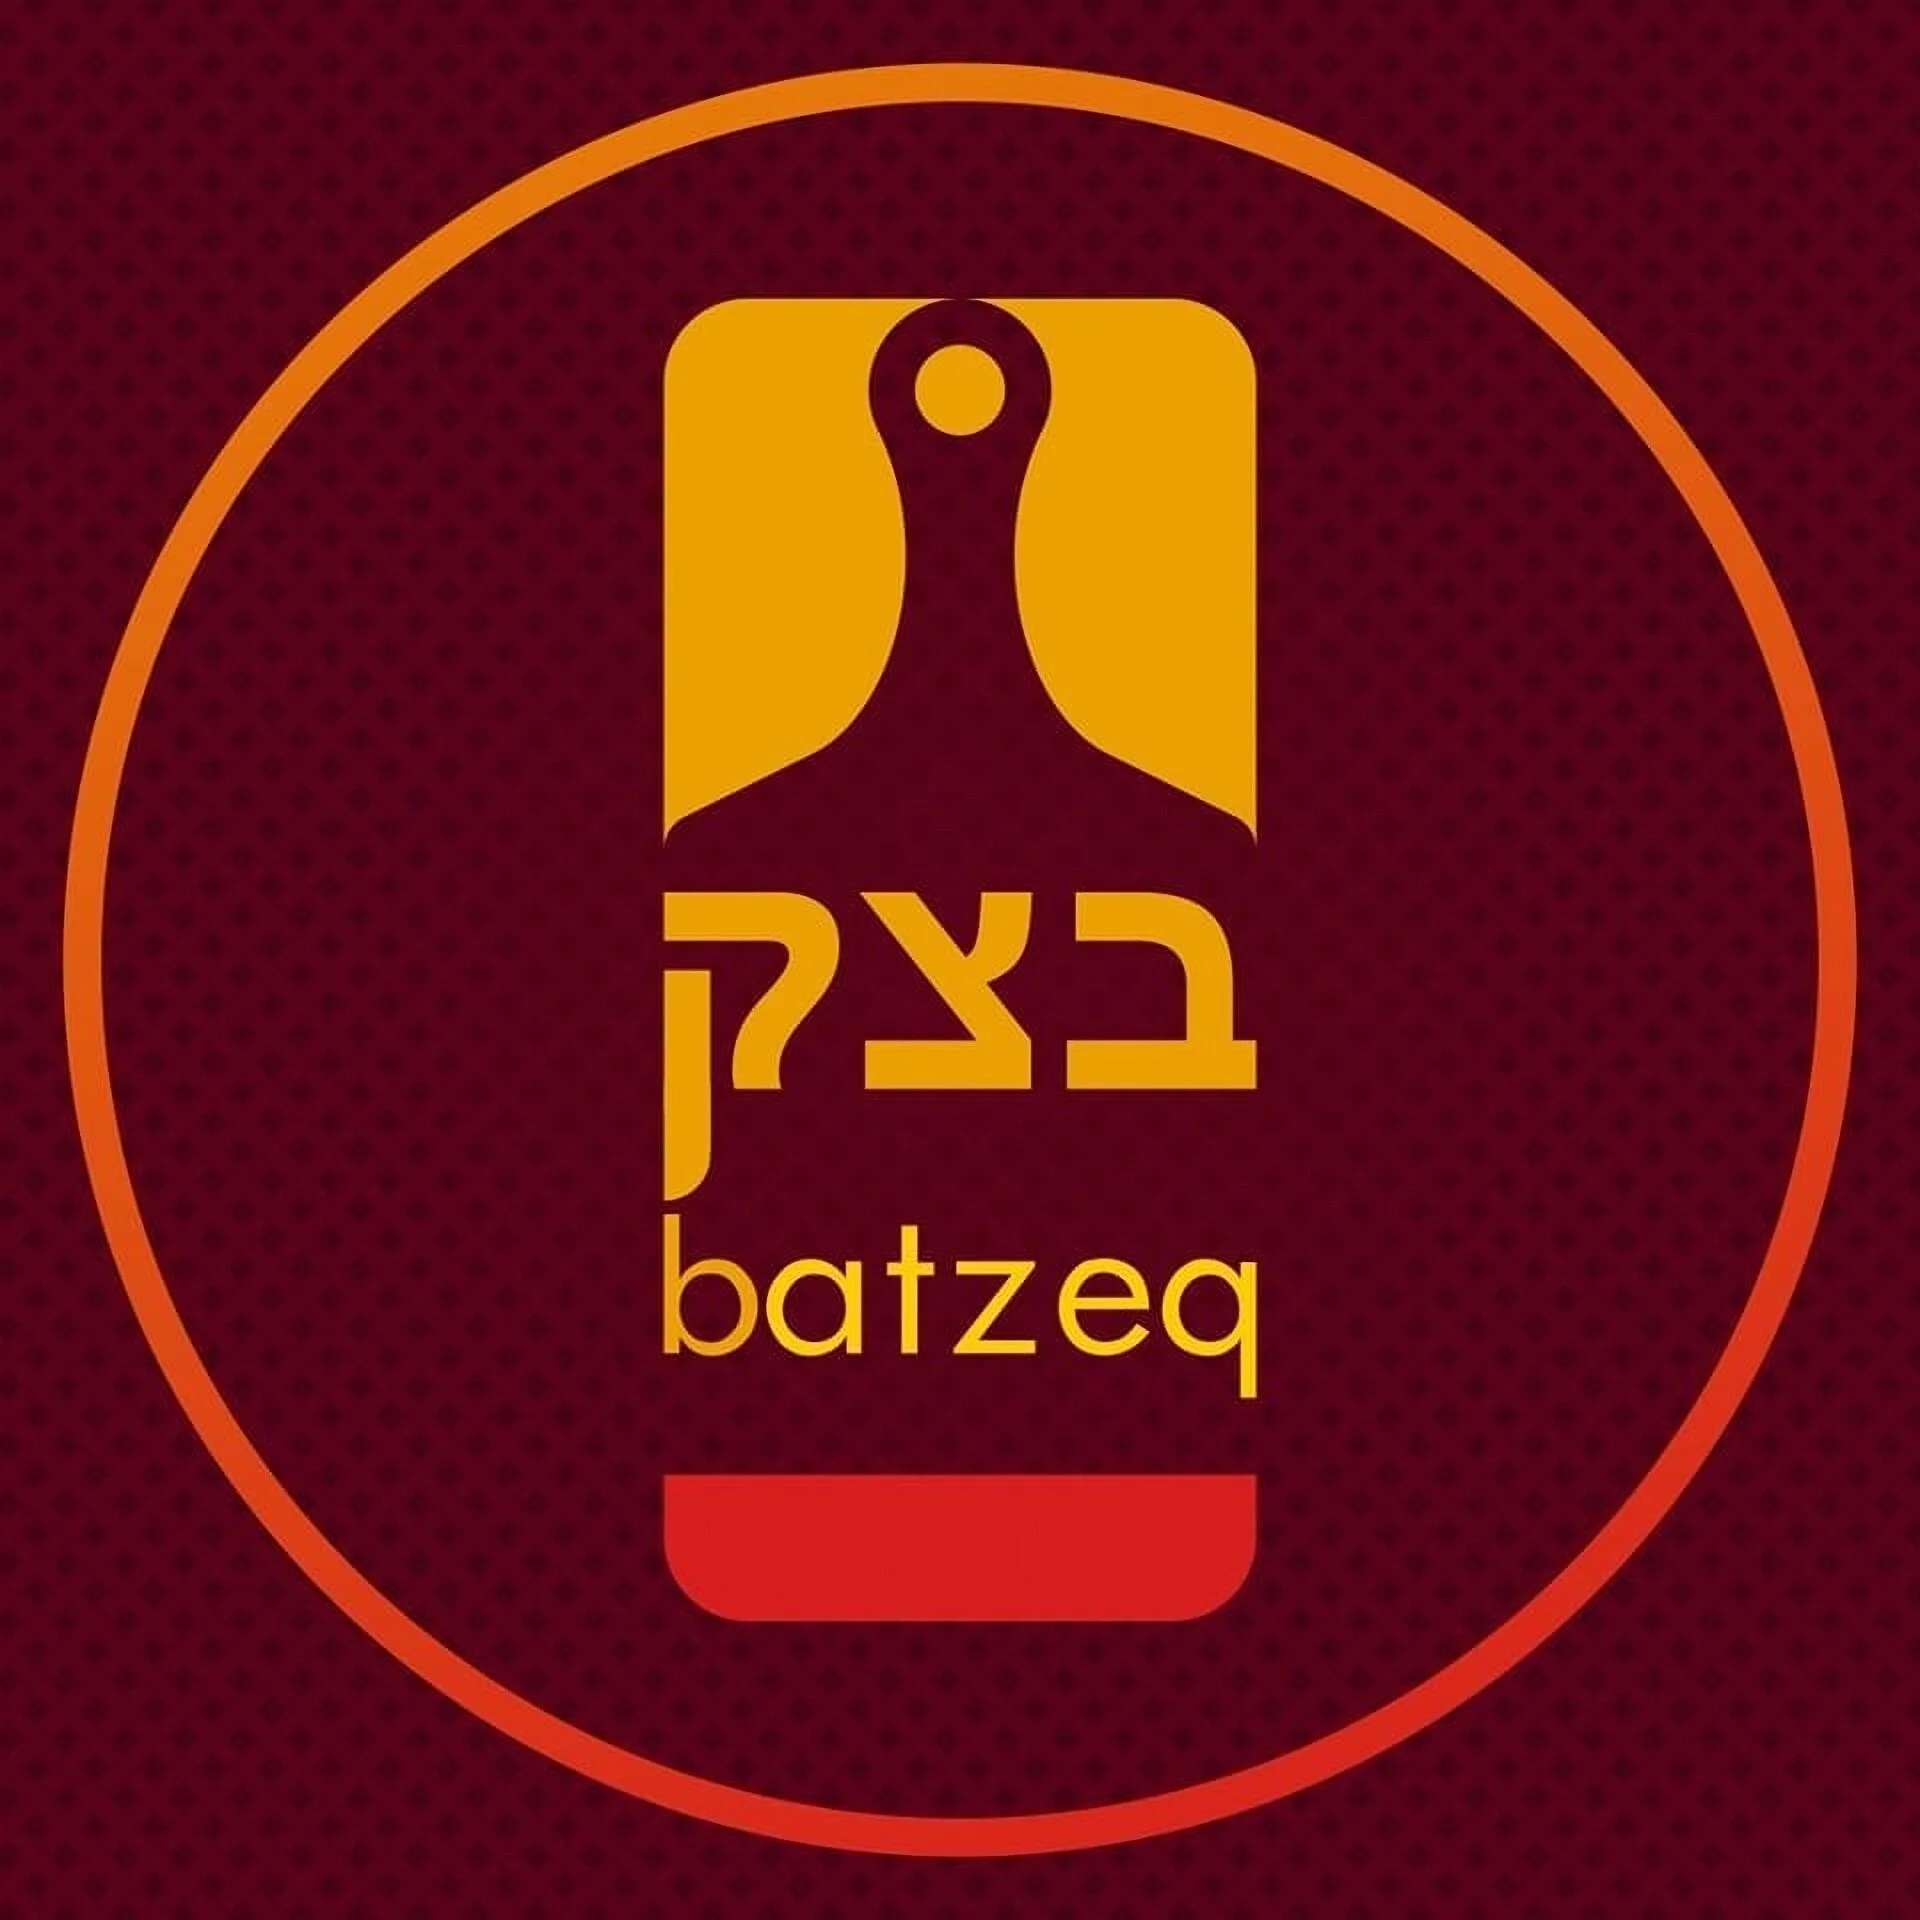 Restaurantes-batzeq-17849